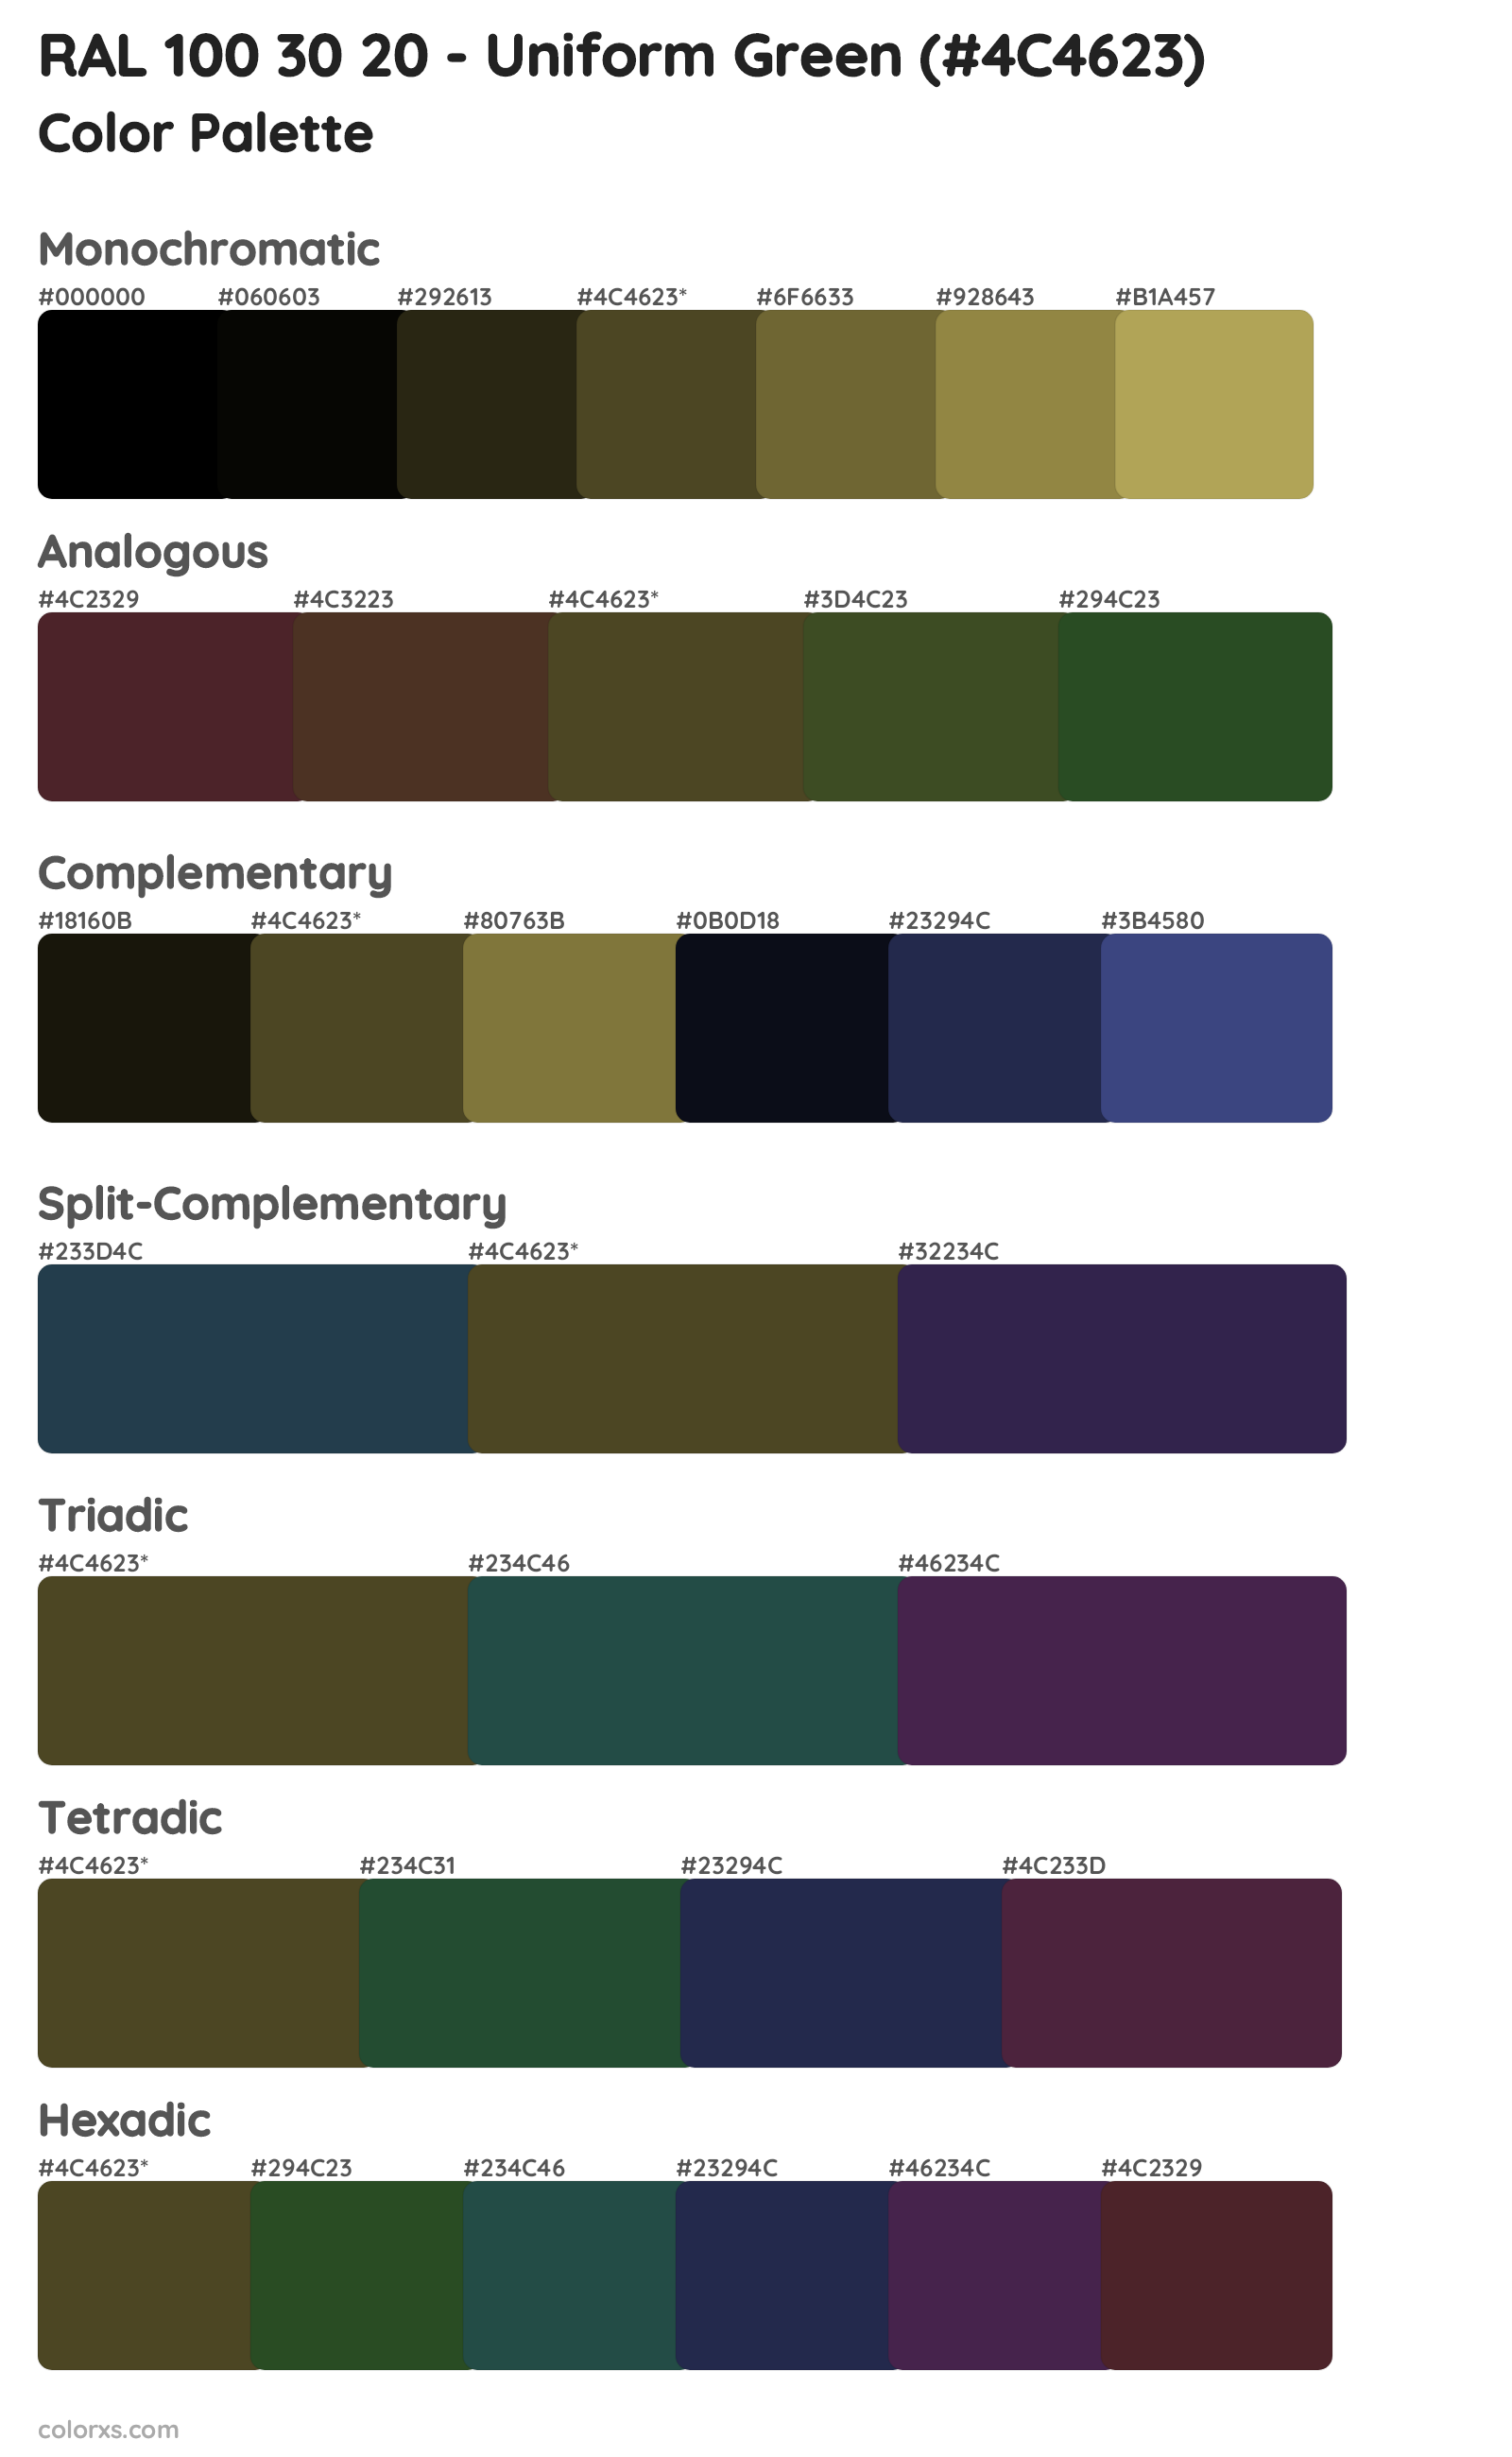 RAL 100 30 20 - Uniform Green Color Scheme Palettes